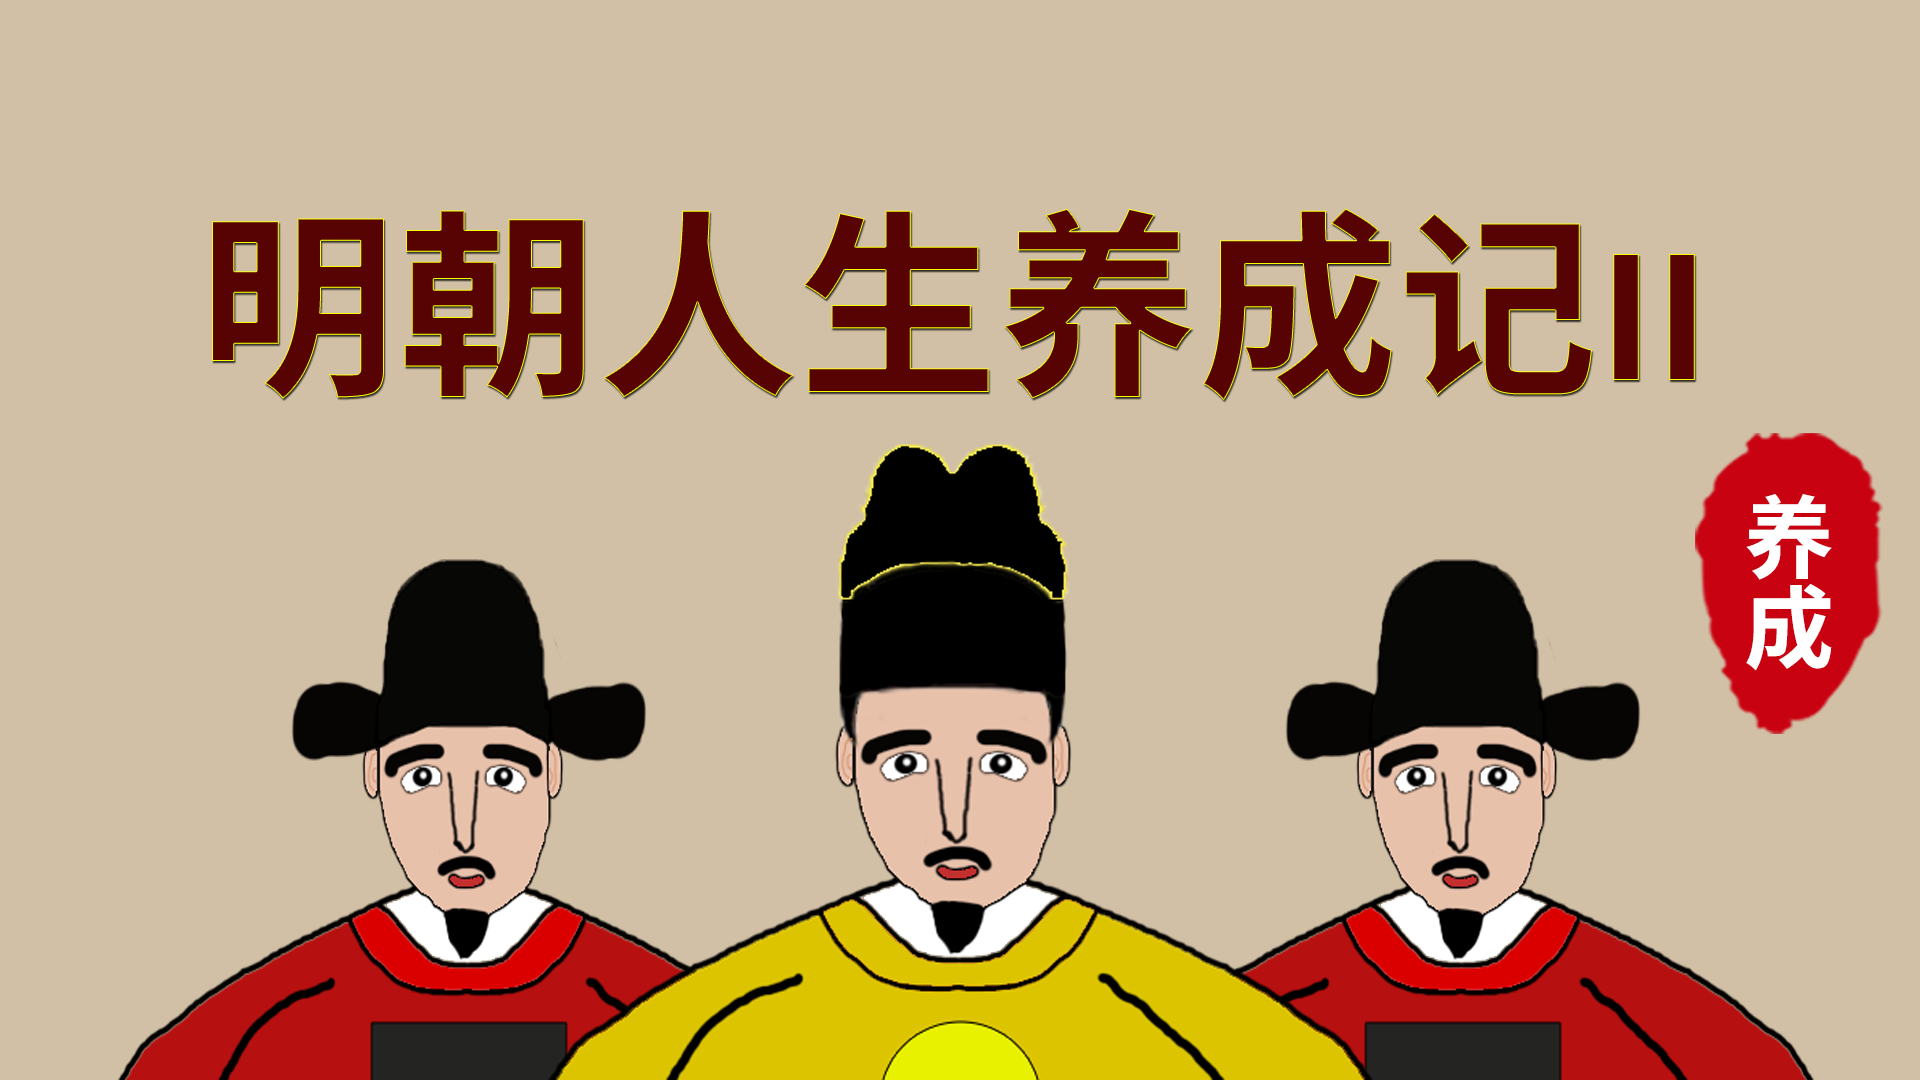 Banner of História de Desenvolvimento da Vida da Dinastia Ming 2 